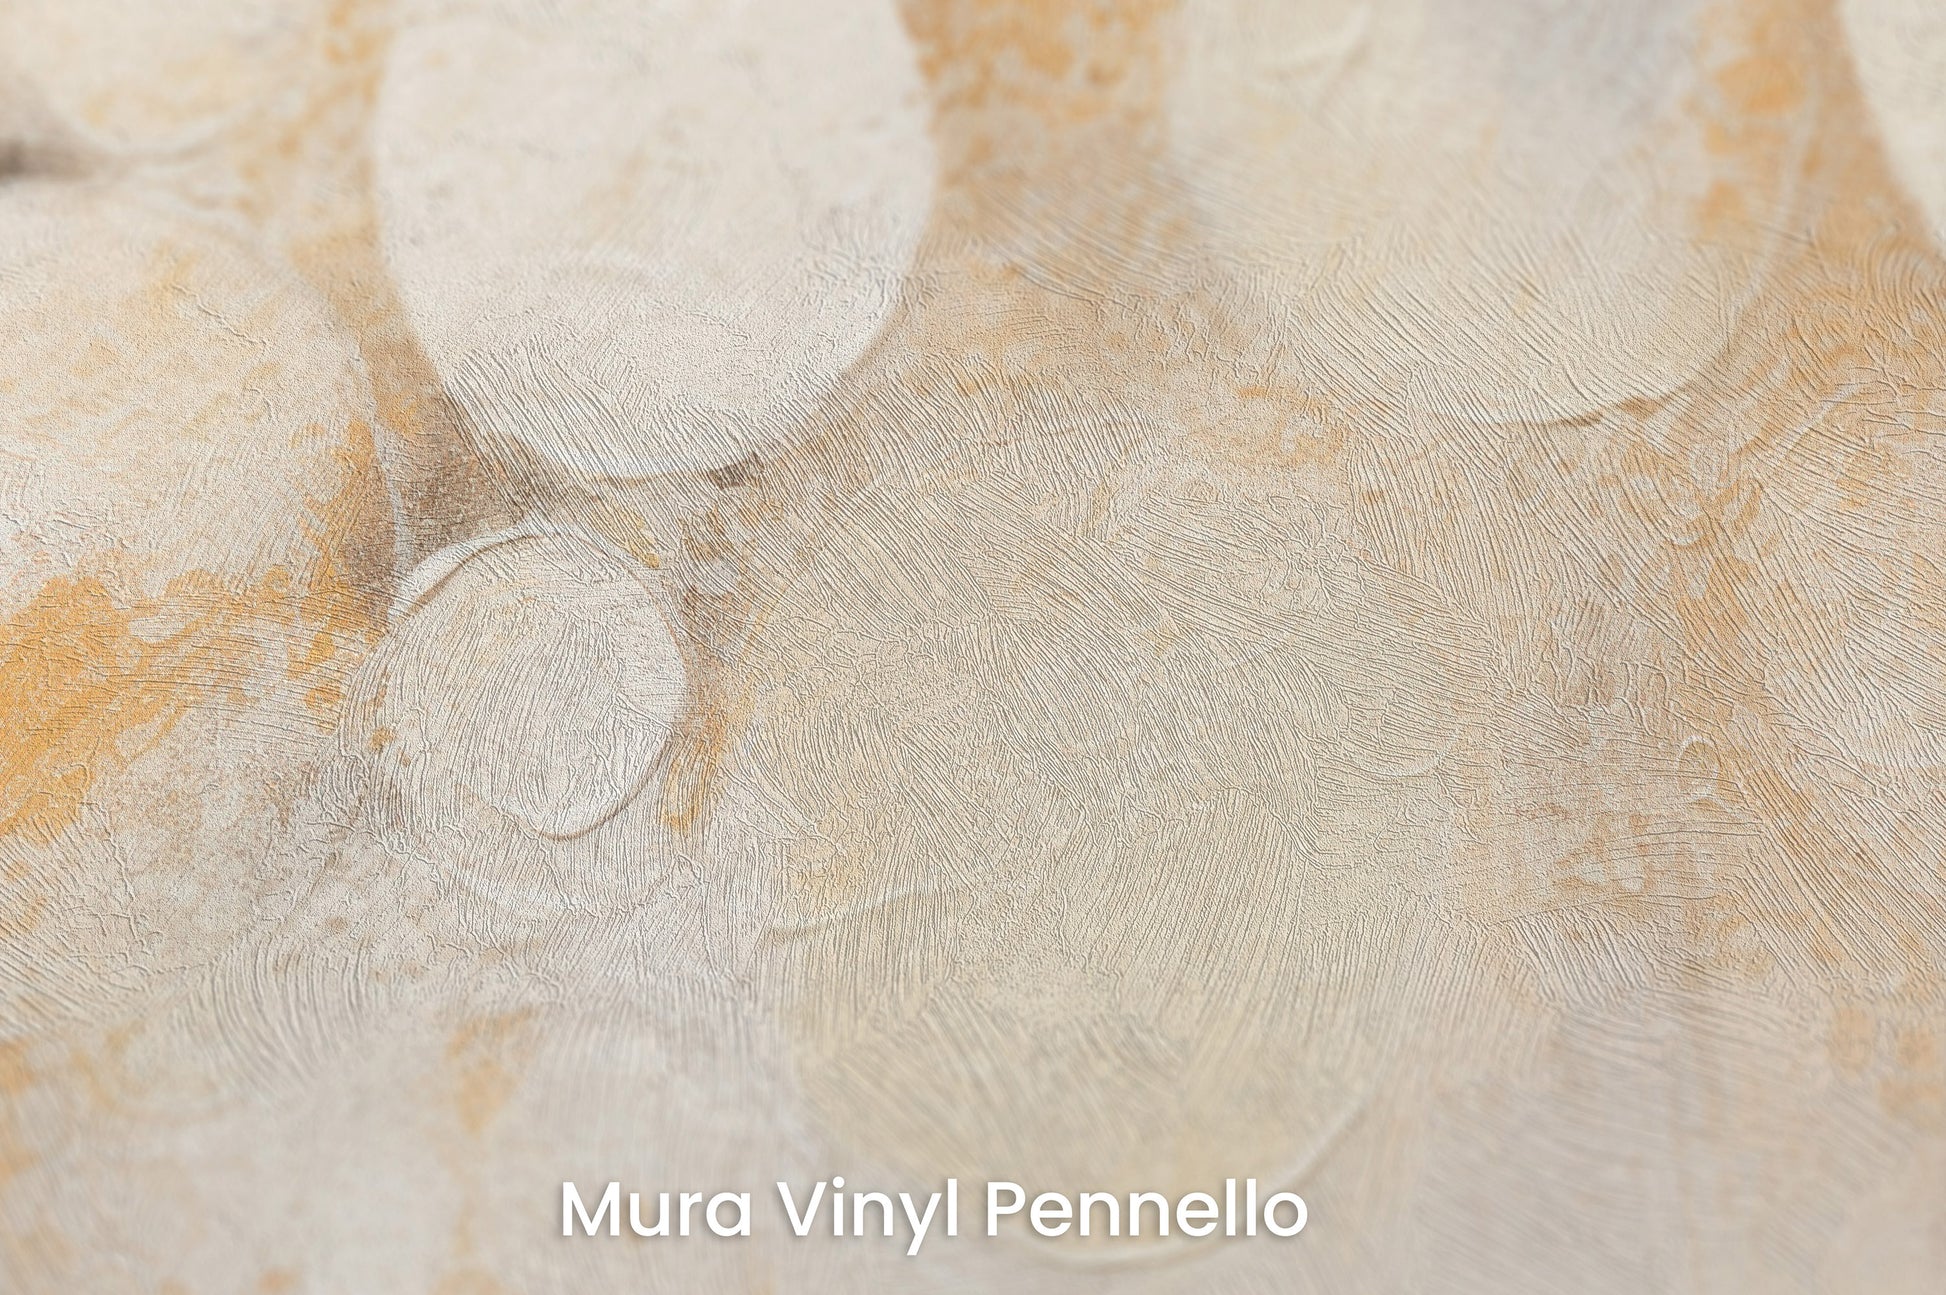 Zbliżenie na artystyczną fototapetę o nazwie LUMINOUS CONSTELLATION na podłożu Mura Vinyl Pennello - faktura pociągnięć pędzla malarskiego.